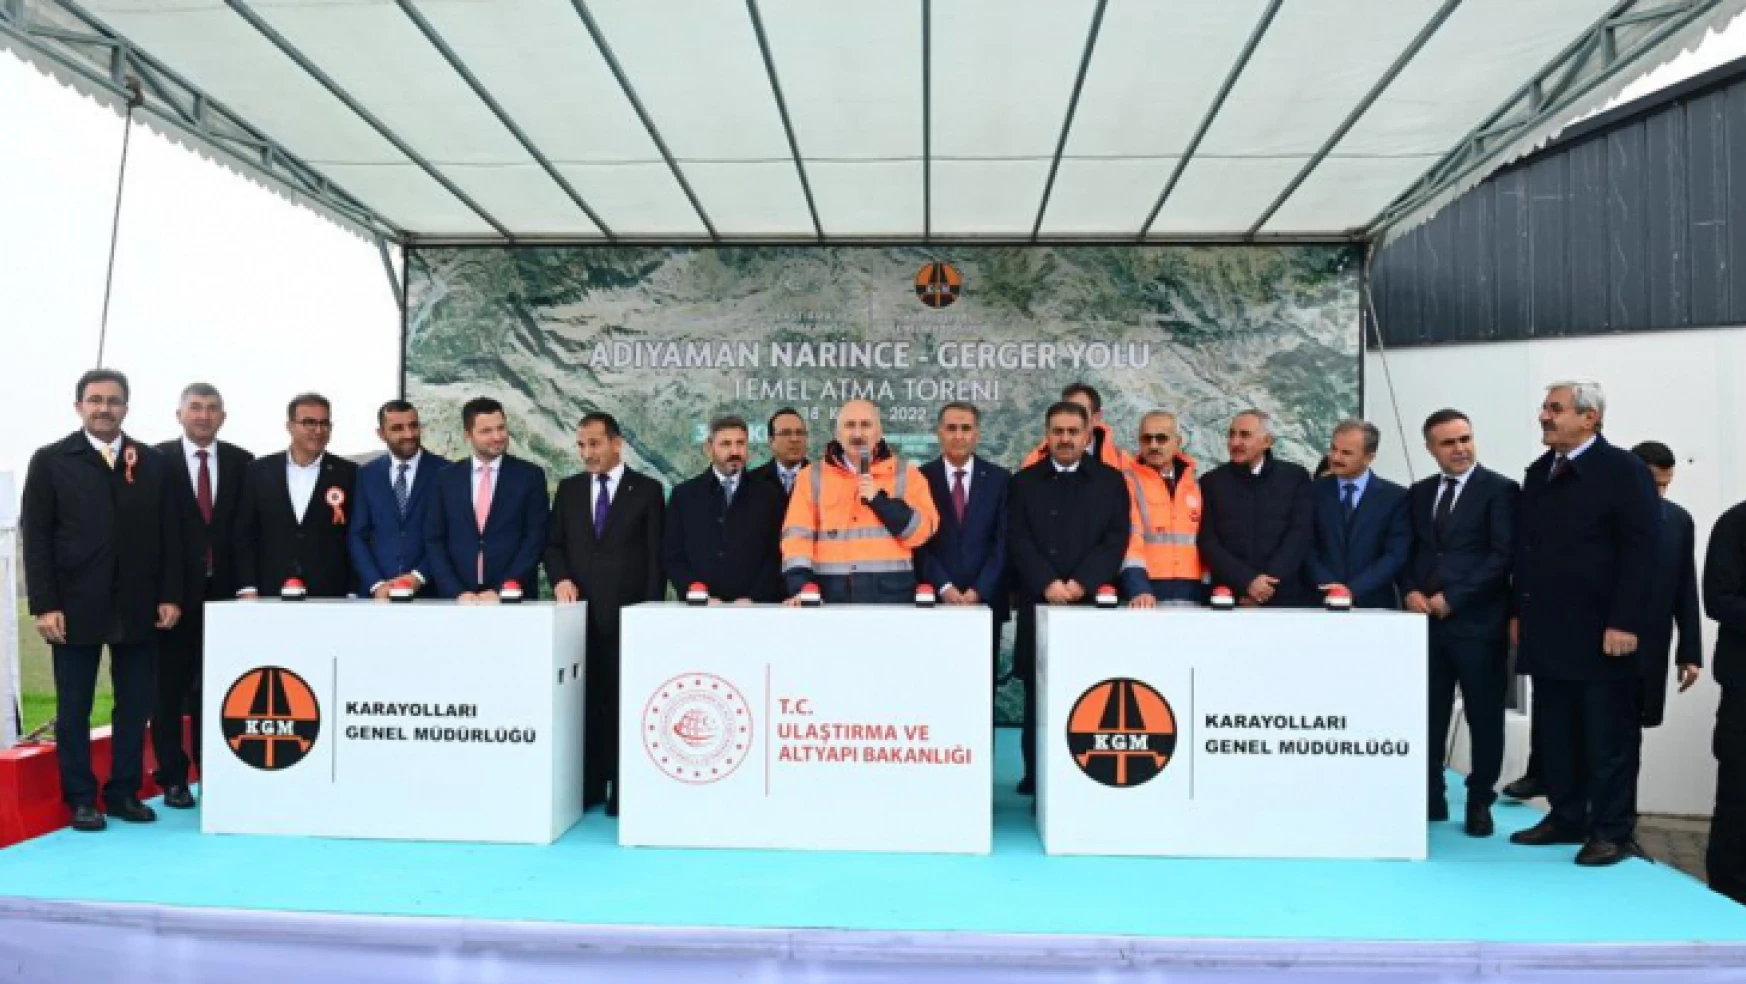 Ulaştırma ve Altyapı Bakanı Adil Karaismailoğlu, Adıyaman'da Narince-Gerger Yolu Temel Atma Töreni'ne katıldı